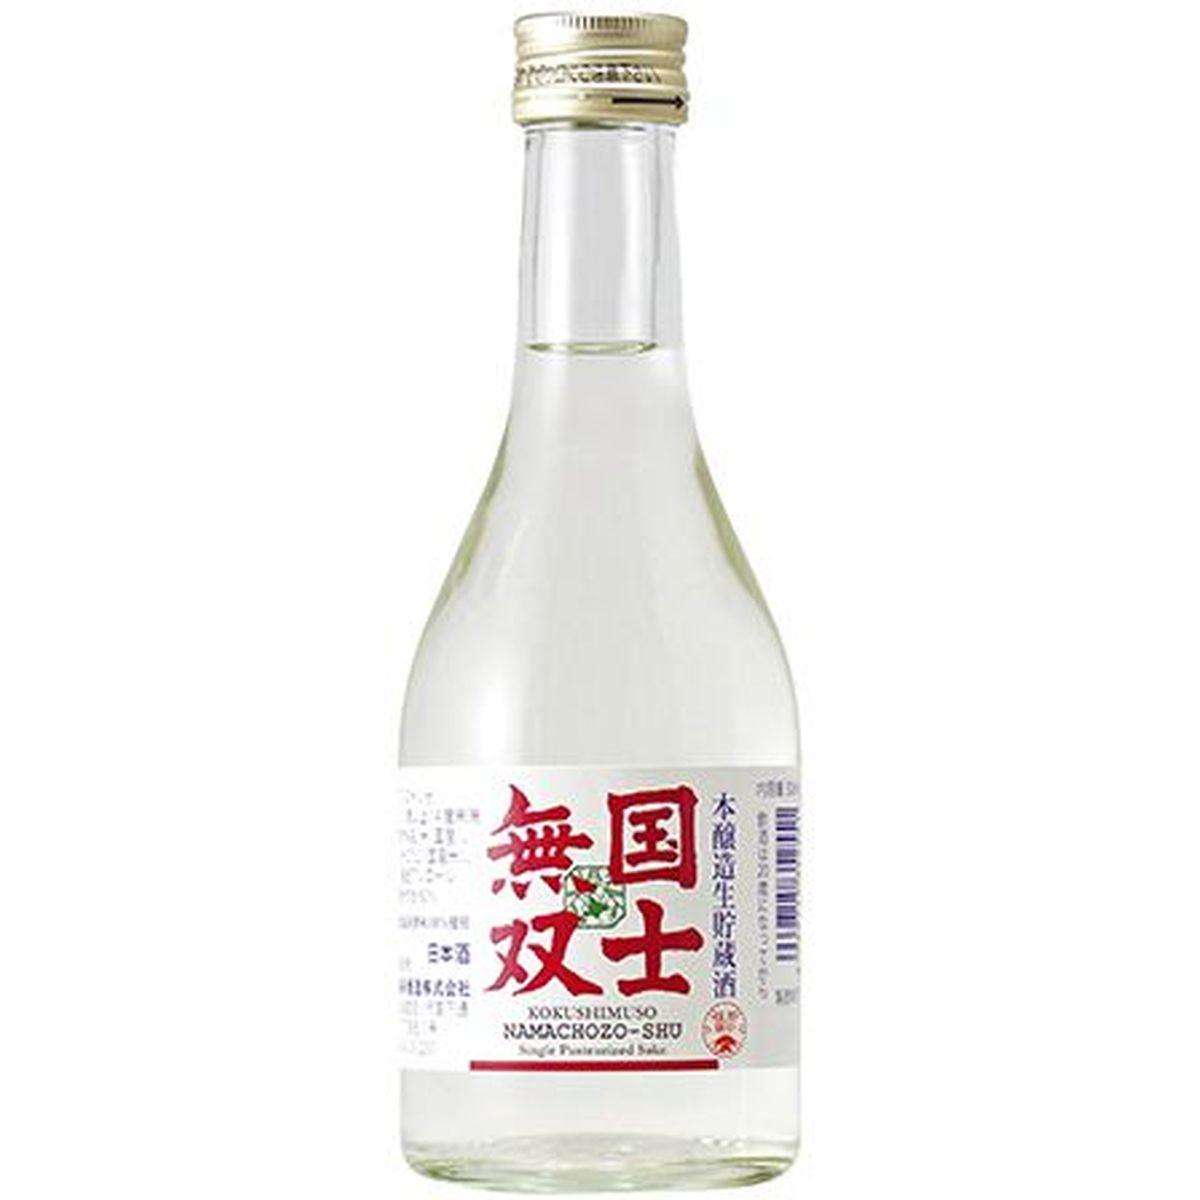 清酒 国士無双 本醸造 生貯蔵酒(新) 300ml